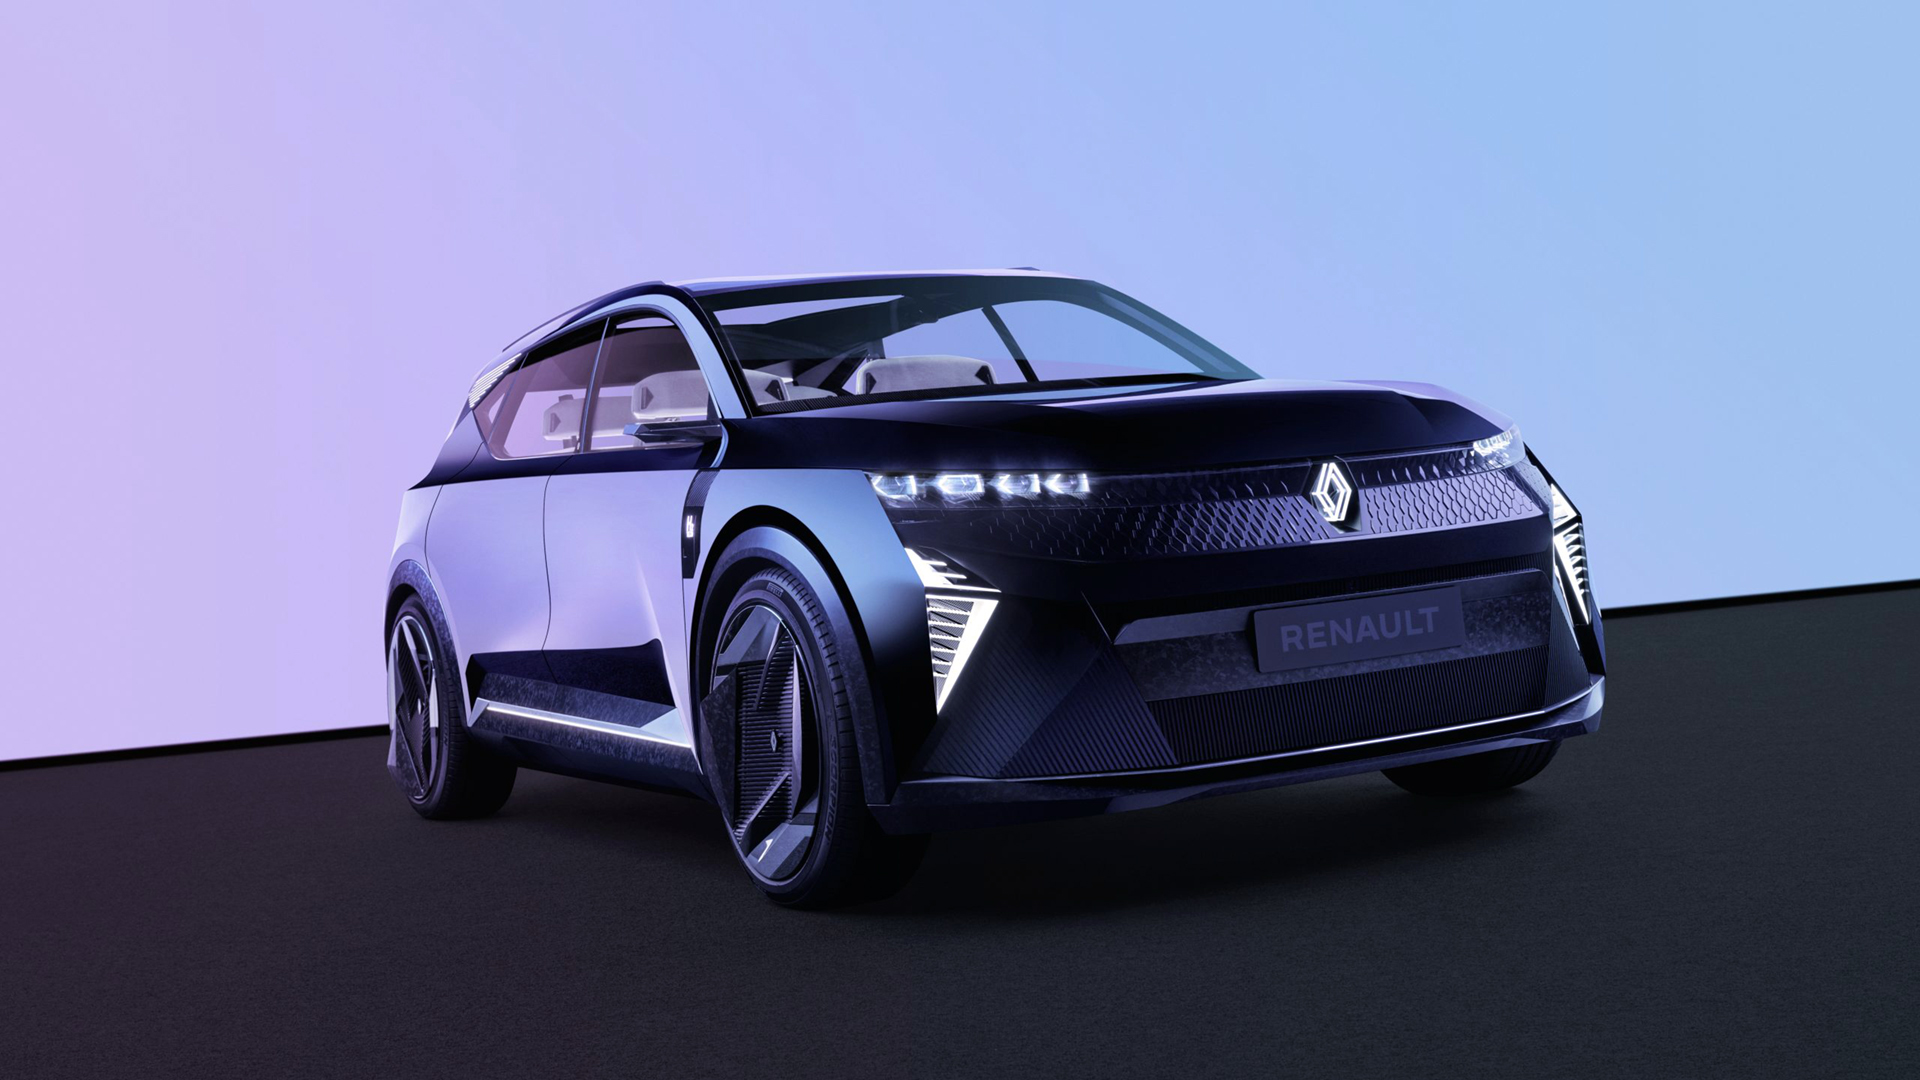 Aunque es un concepto de futuro, el Renault Scénic Vision tiene similitudes familiares con el actual Mégane E-Tech